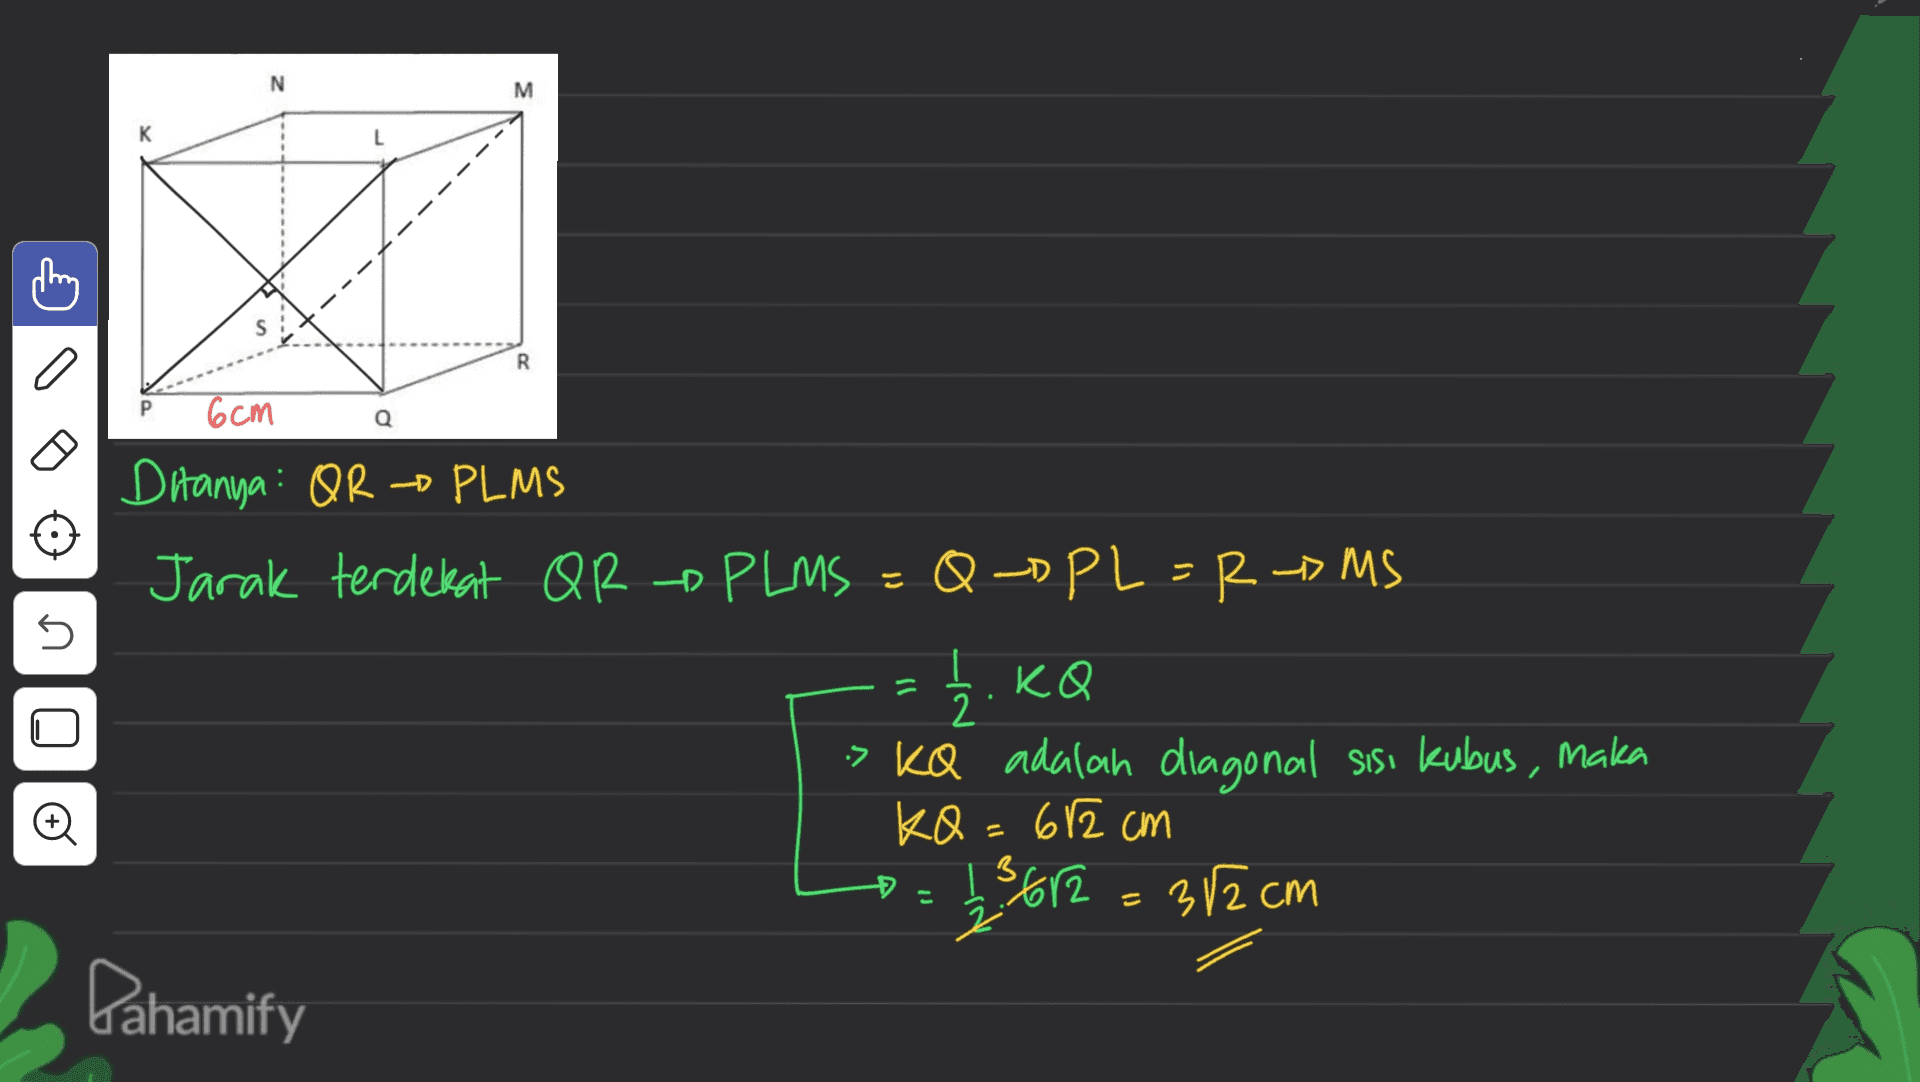 N M к R 6cm ภ n. Ditanya: OR PLMS Jarak terdekat QR - PLMS = Q-DPL = RMS = 1/2, KQ > KQ adalah diagonal sisi kubus, maka KQ = 612 cm 123 612 = 32cm Dahamify o Đ 